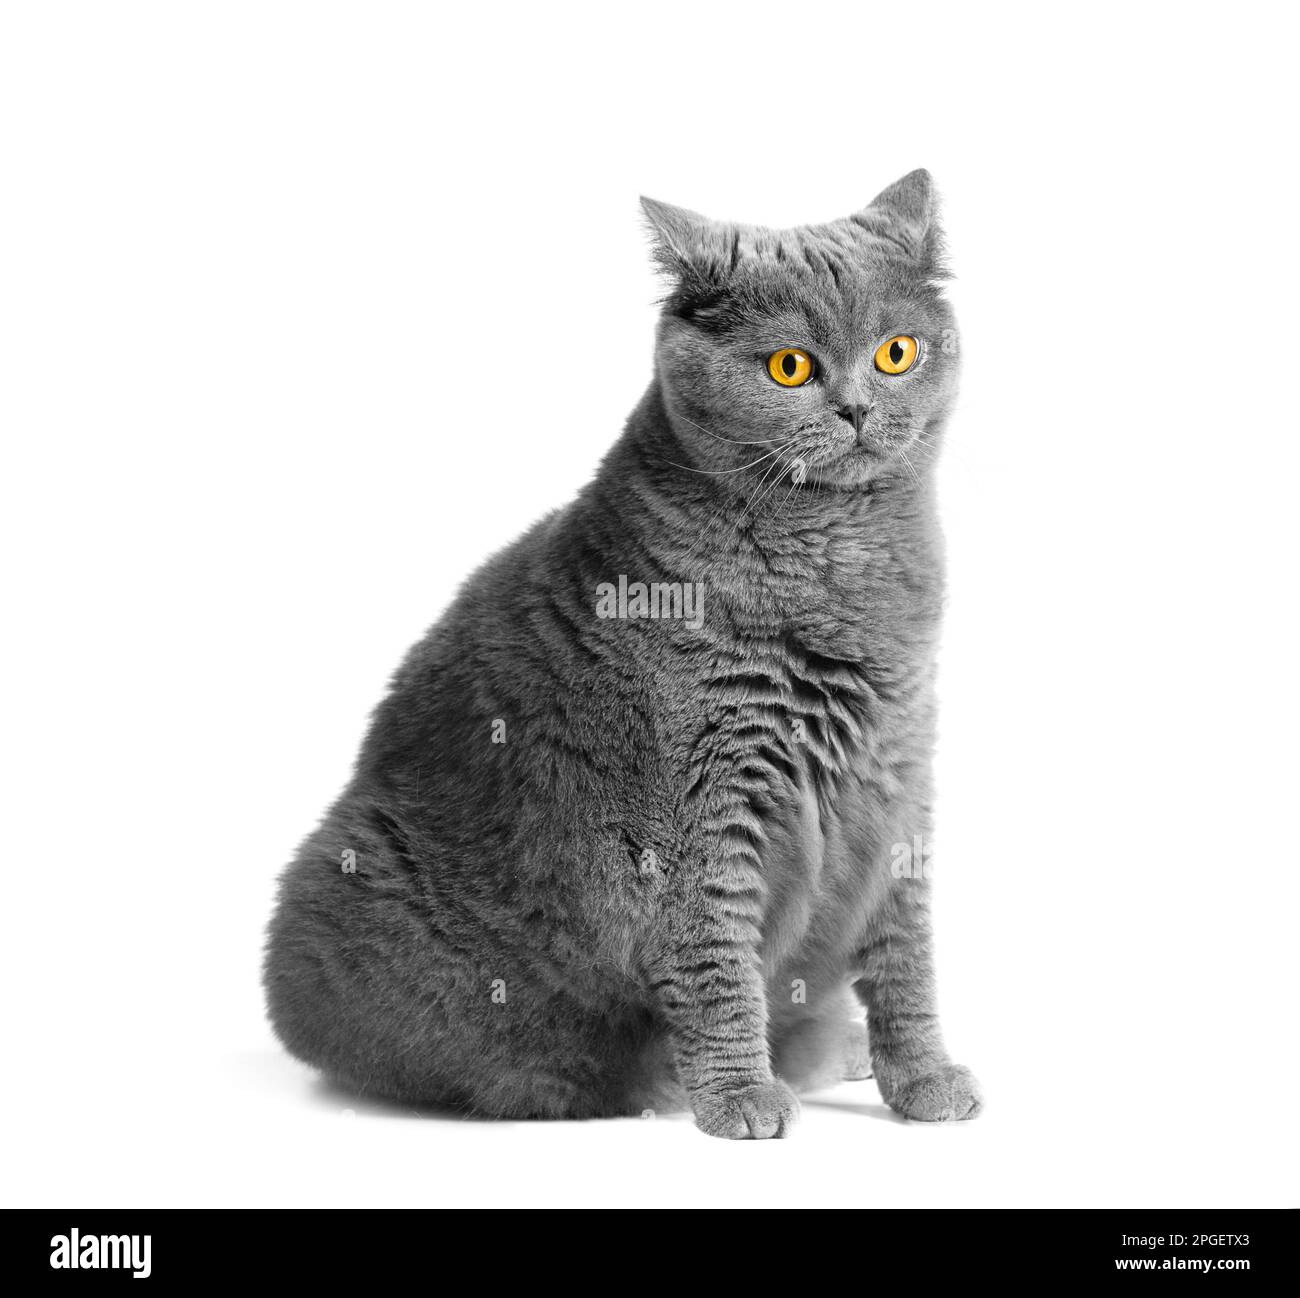 Un chat gras de shorthair avec de grands yeux rouges est assis sur un fond blanc. Obésité animale. Chat britannique sur fond blanc. Banque D'Images